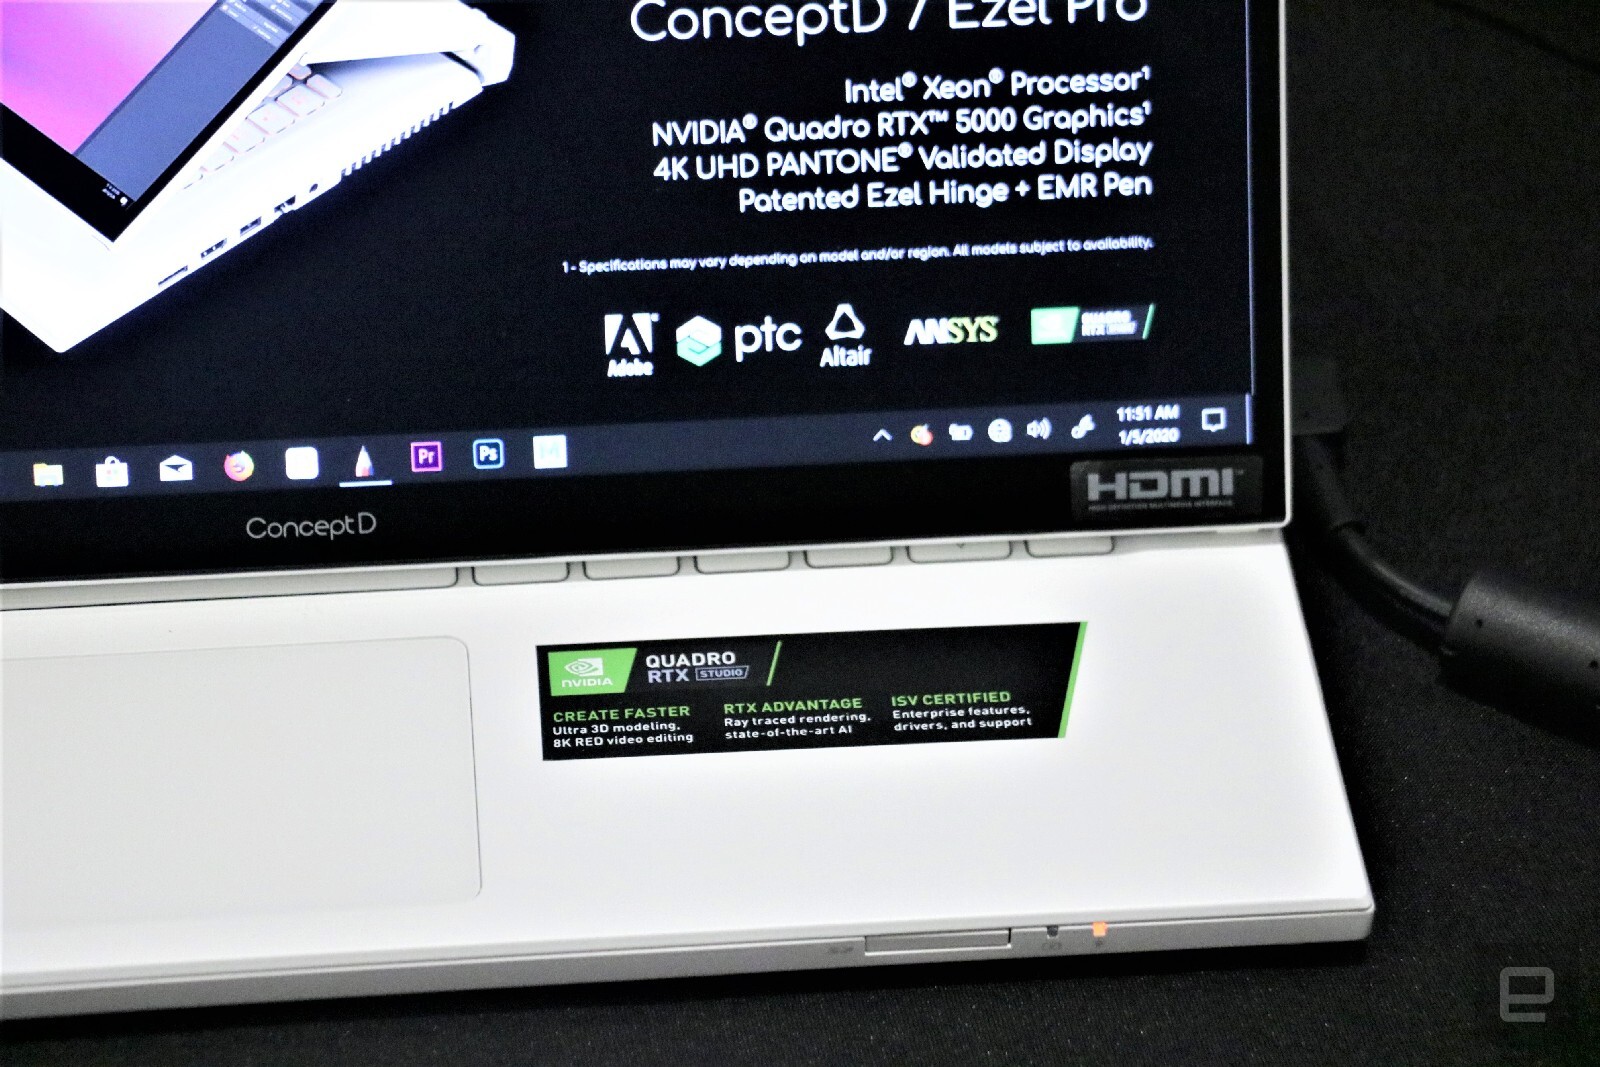 Sforum - Trang thông tin công nghệ mới nhất acer-conceptd-7-ezel-pro-hands-on-1-10 [CES 2020] Chiêm ngưỡng Acer ConceptD 7 Ezel: Thiết kế như Vaio Flip, cấu hình khủng